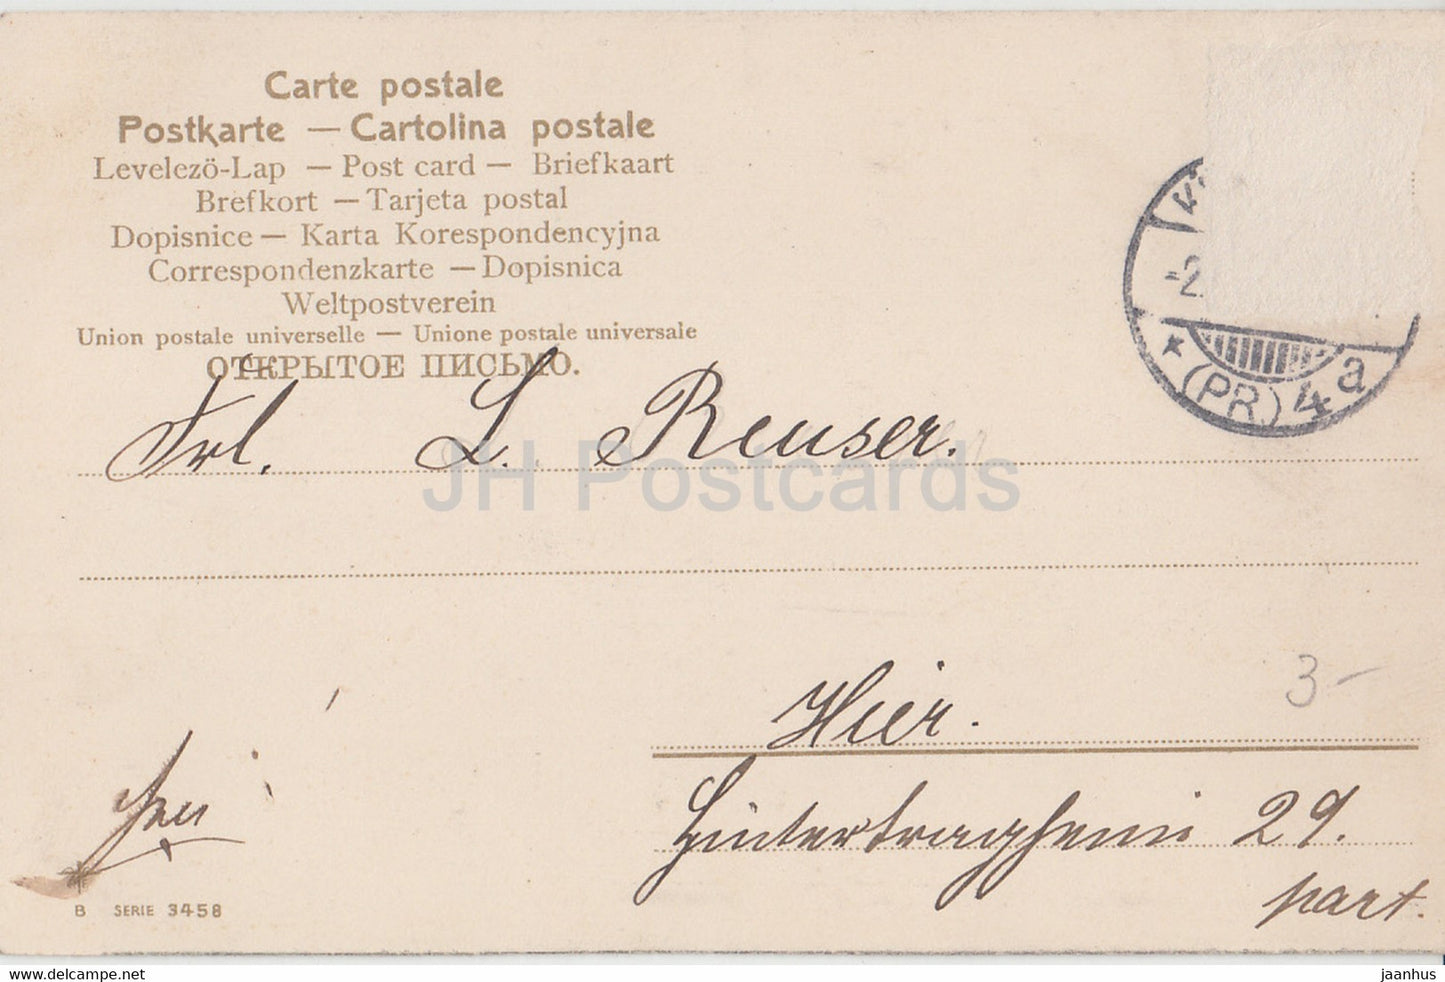 Carte de vœux de Pâques - Frohliche Ostern - fille - mouton - Série 3458 - carte postale ancienne - Allemagne - d'occasion